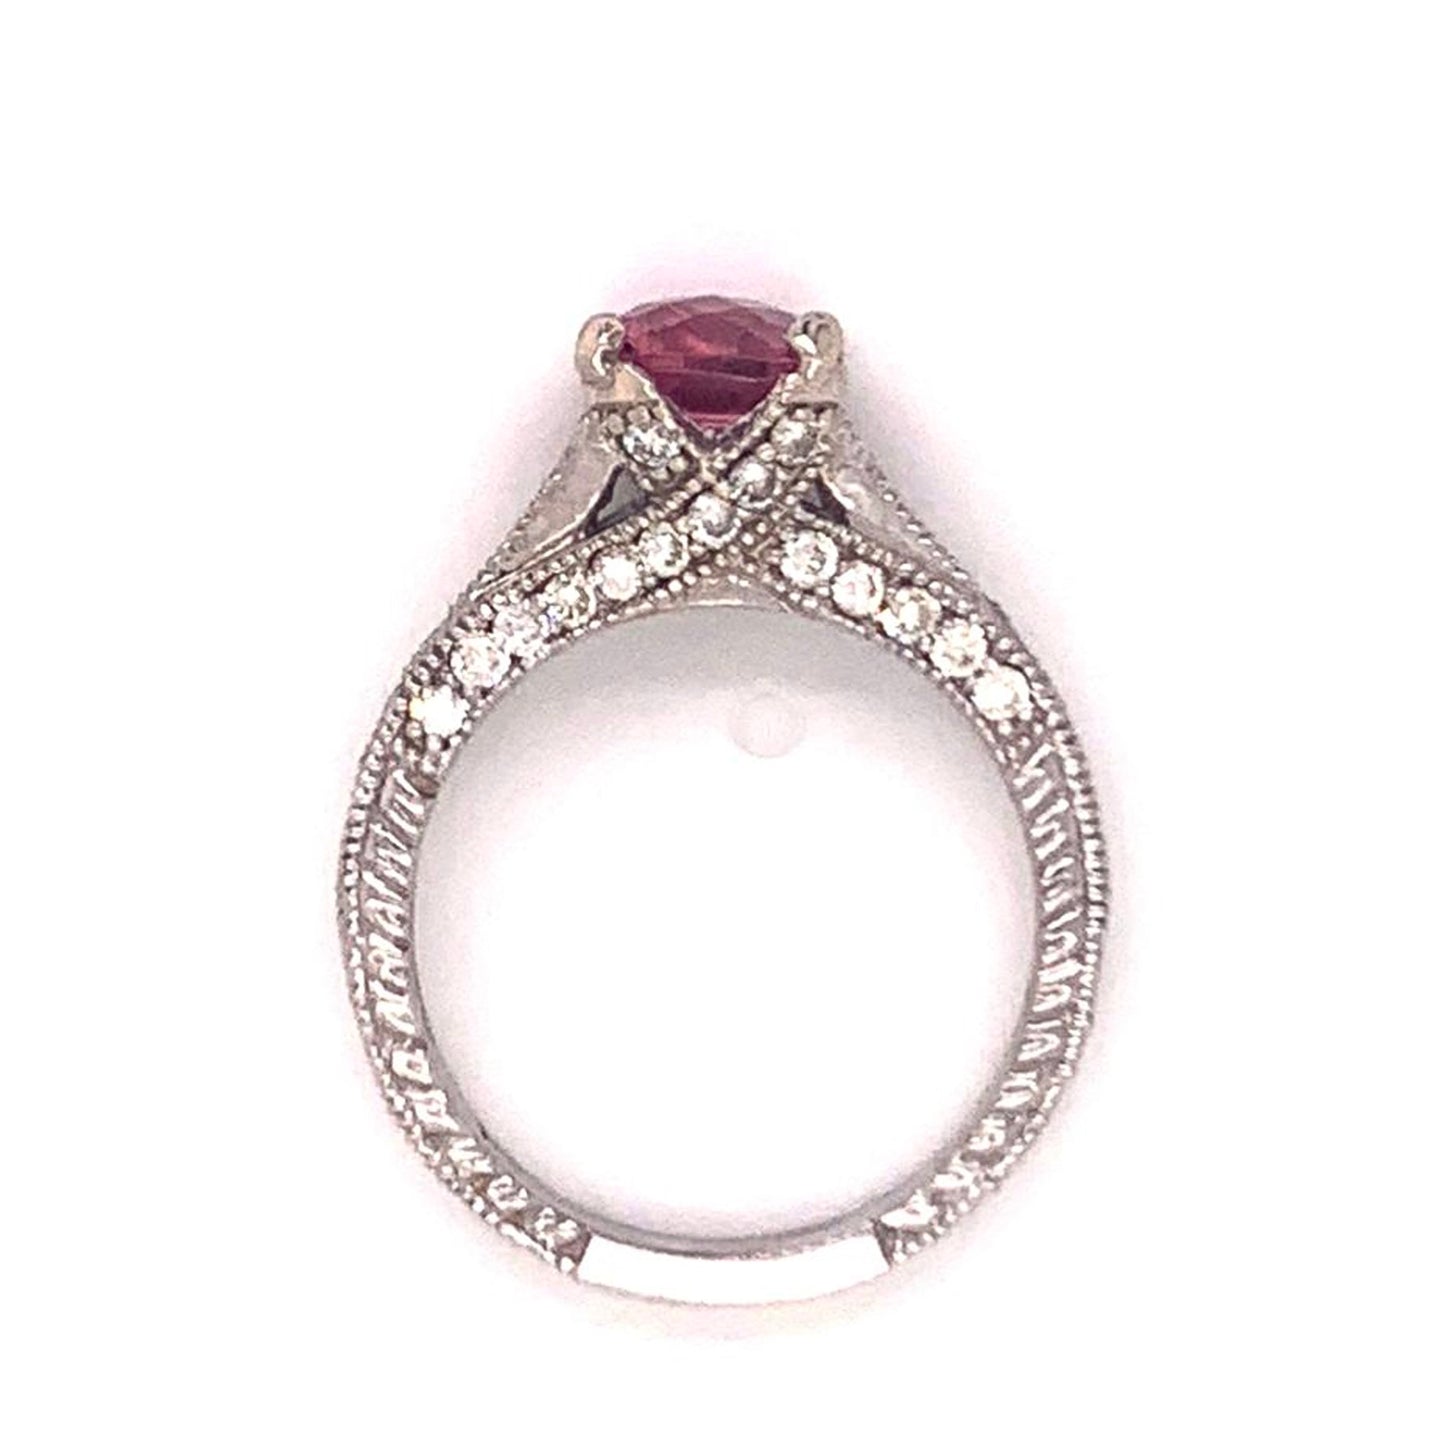 Diamond Pink Tourmaline Rubellite Ring 6.5 14k Gold 2.45 Tcw Certified $3,700 912289